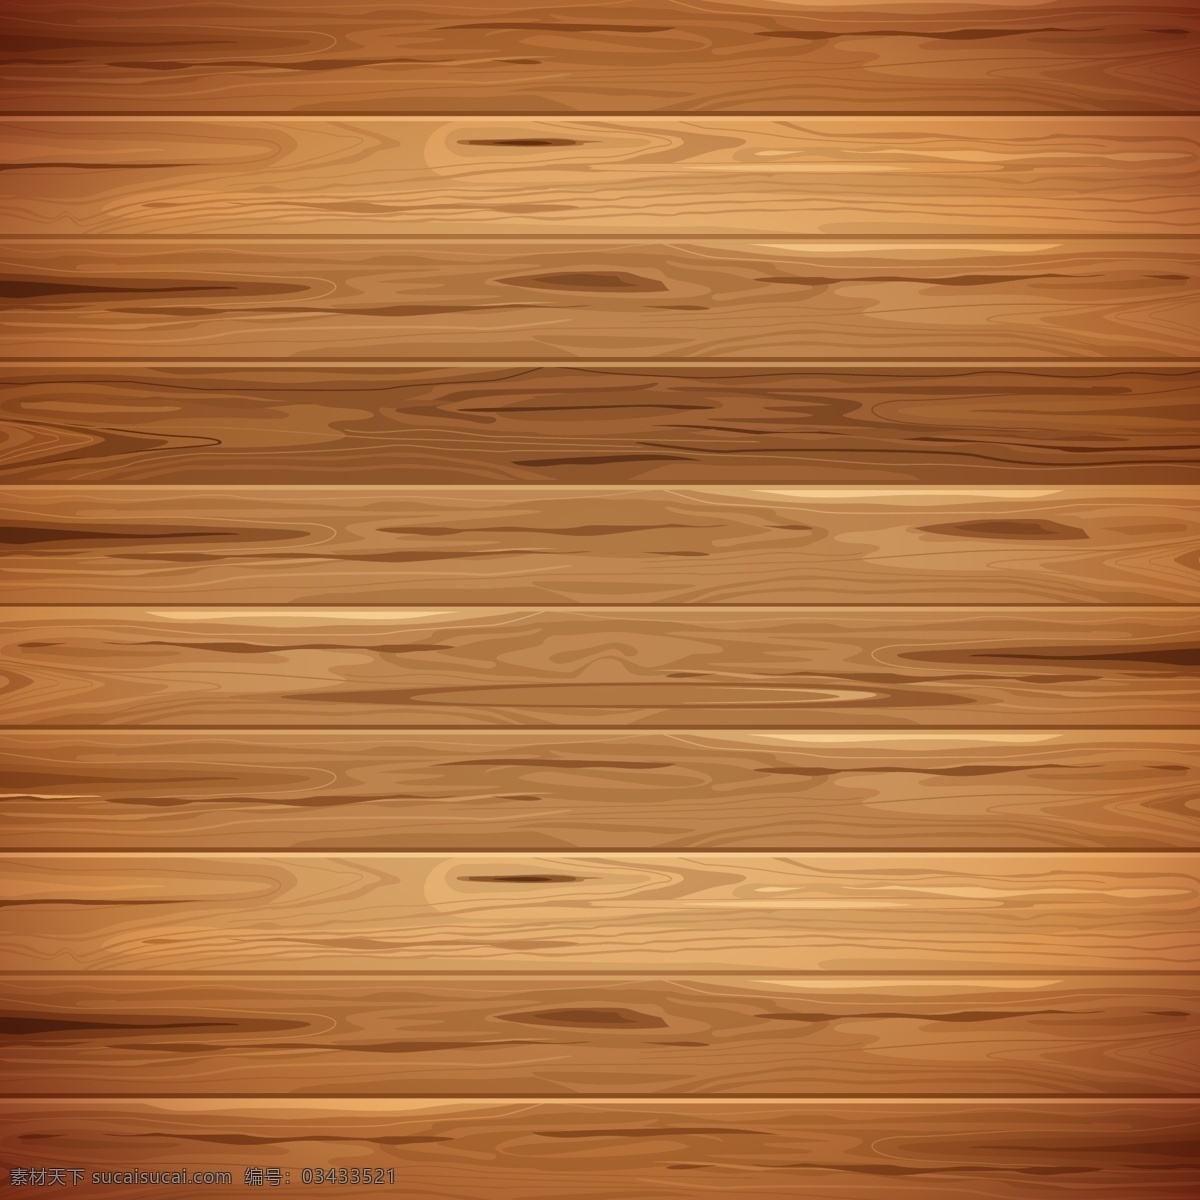 简约 创意 手绘 风 褐色 原木 木纹 背景 木板 木头 质感 实木纹 木质